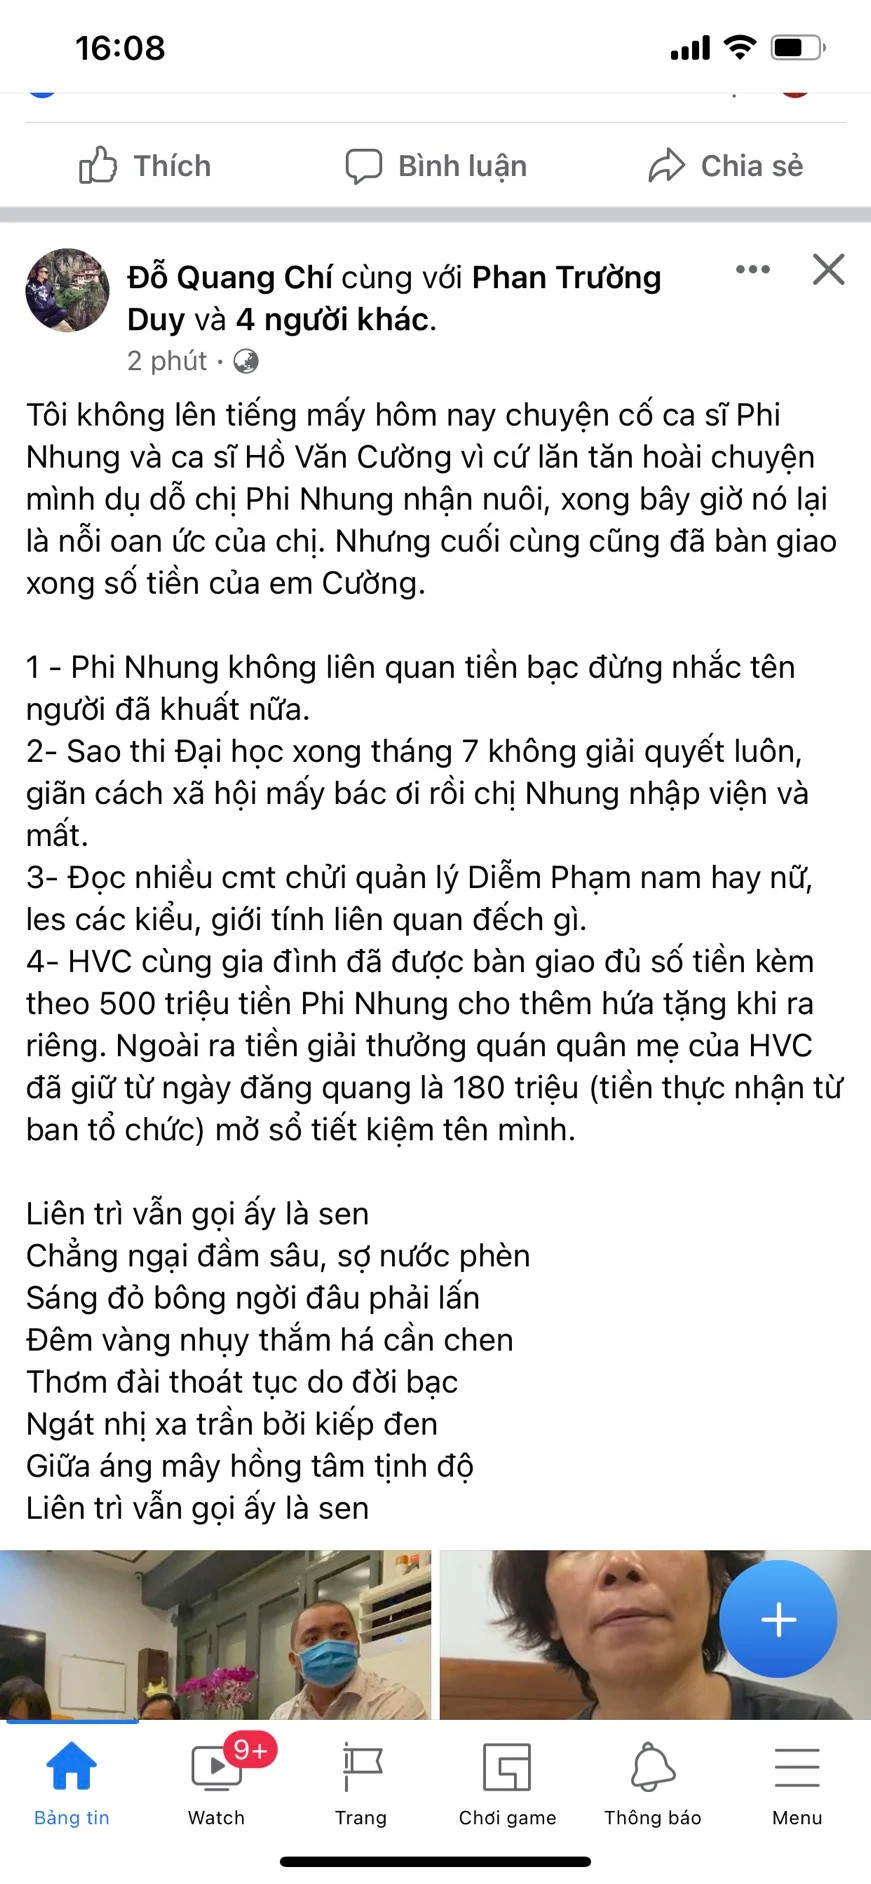 Bài đăng của thành viên ê kíp Phi Nhung cách đây ít giờ